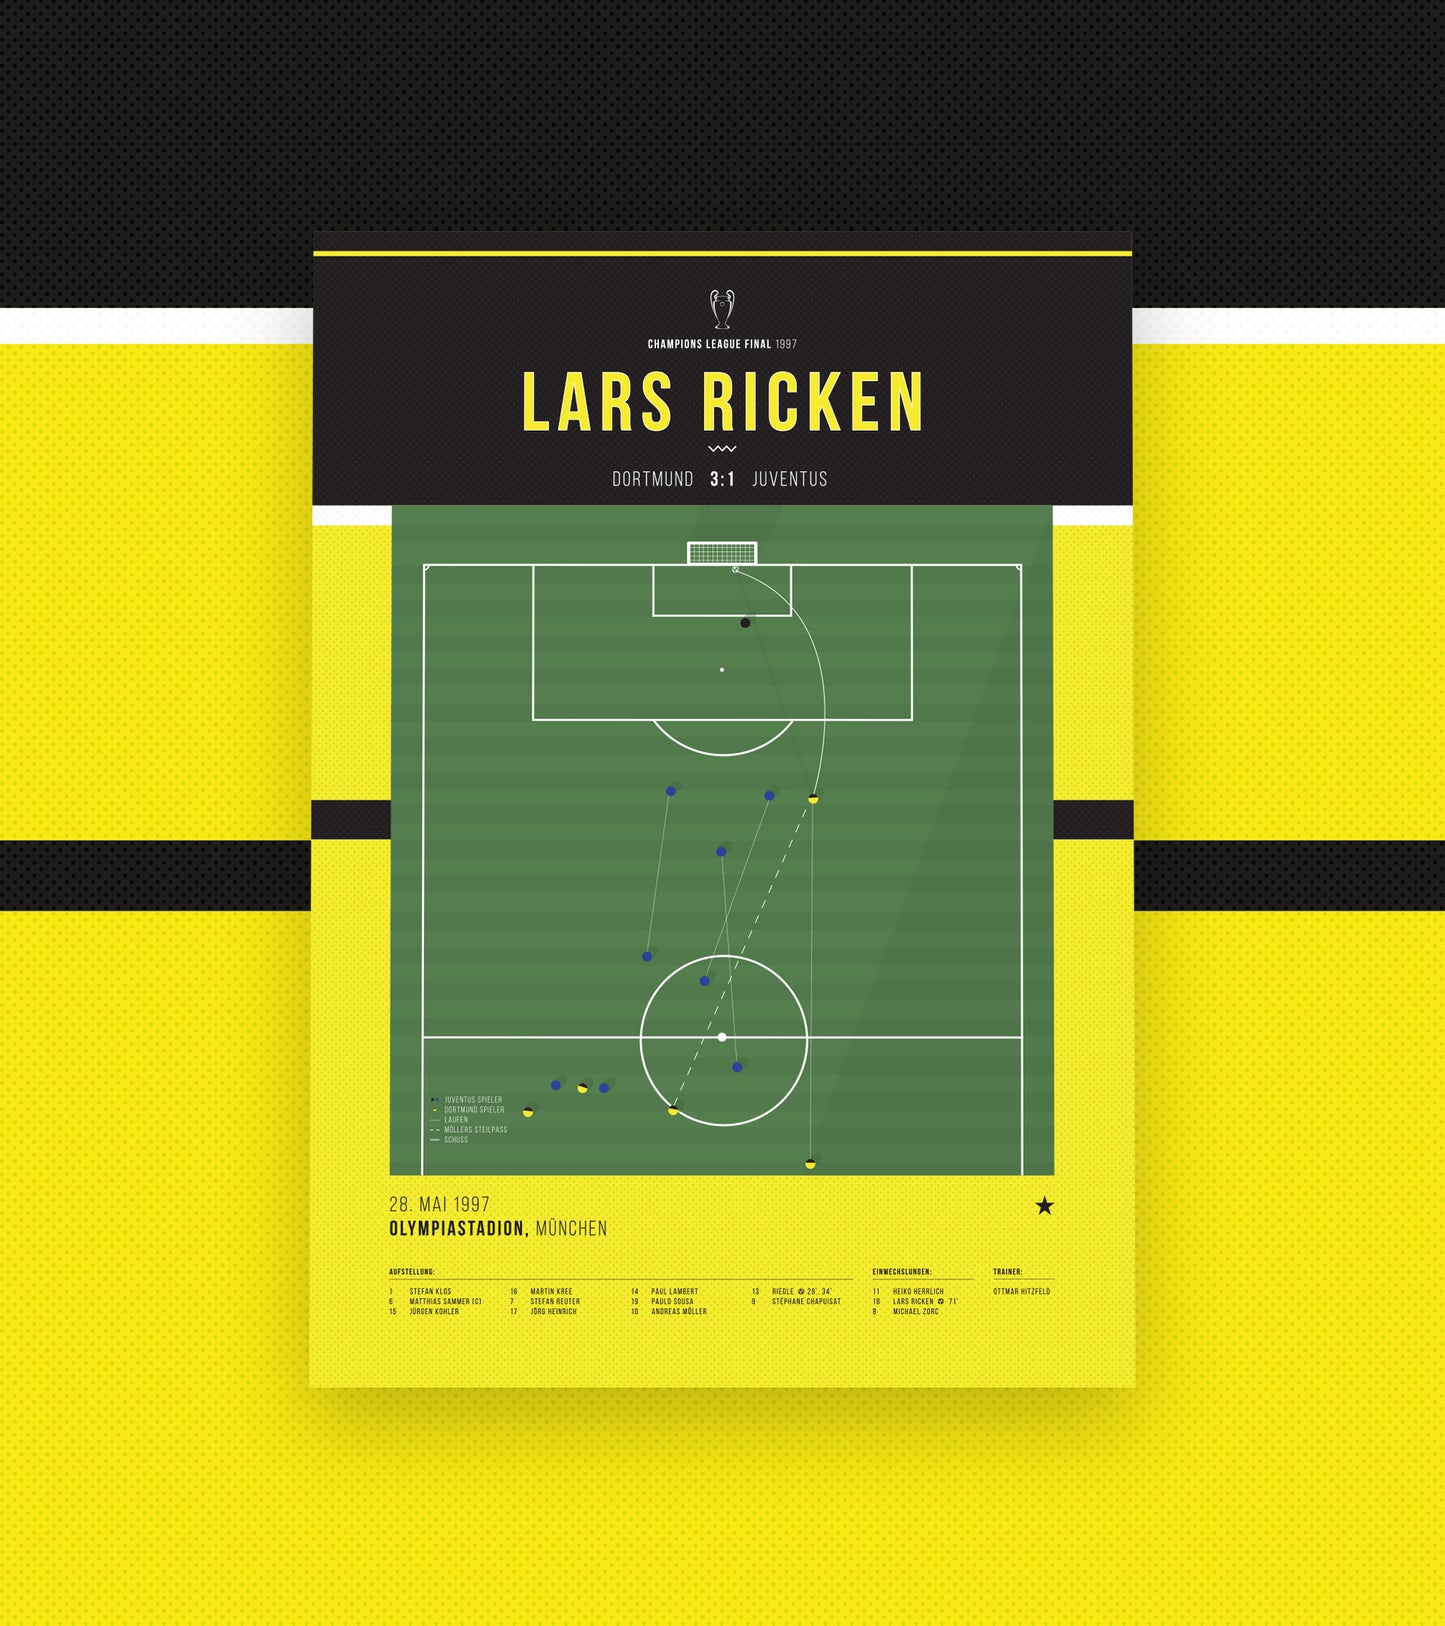 Lars Ricken marque un but incroyable pour étourdir la Juventus en 1997